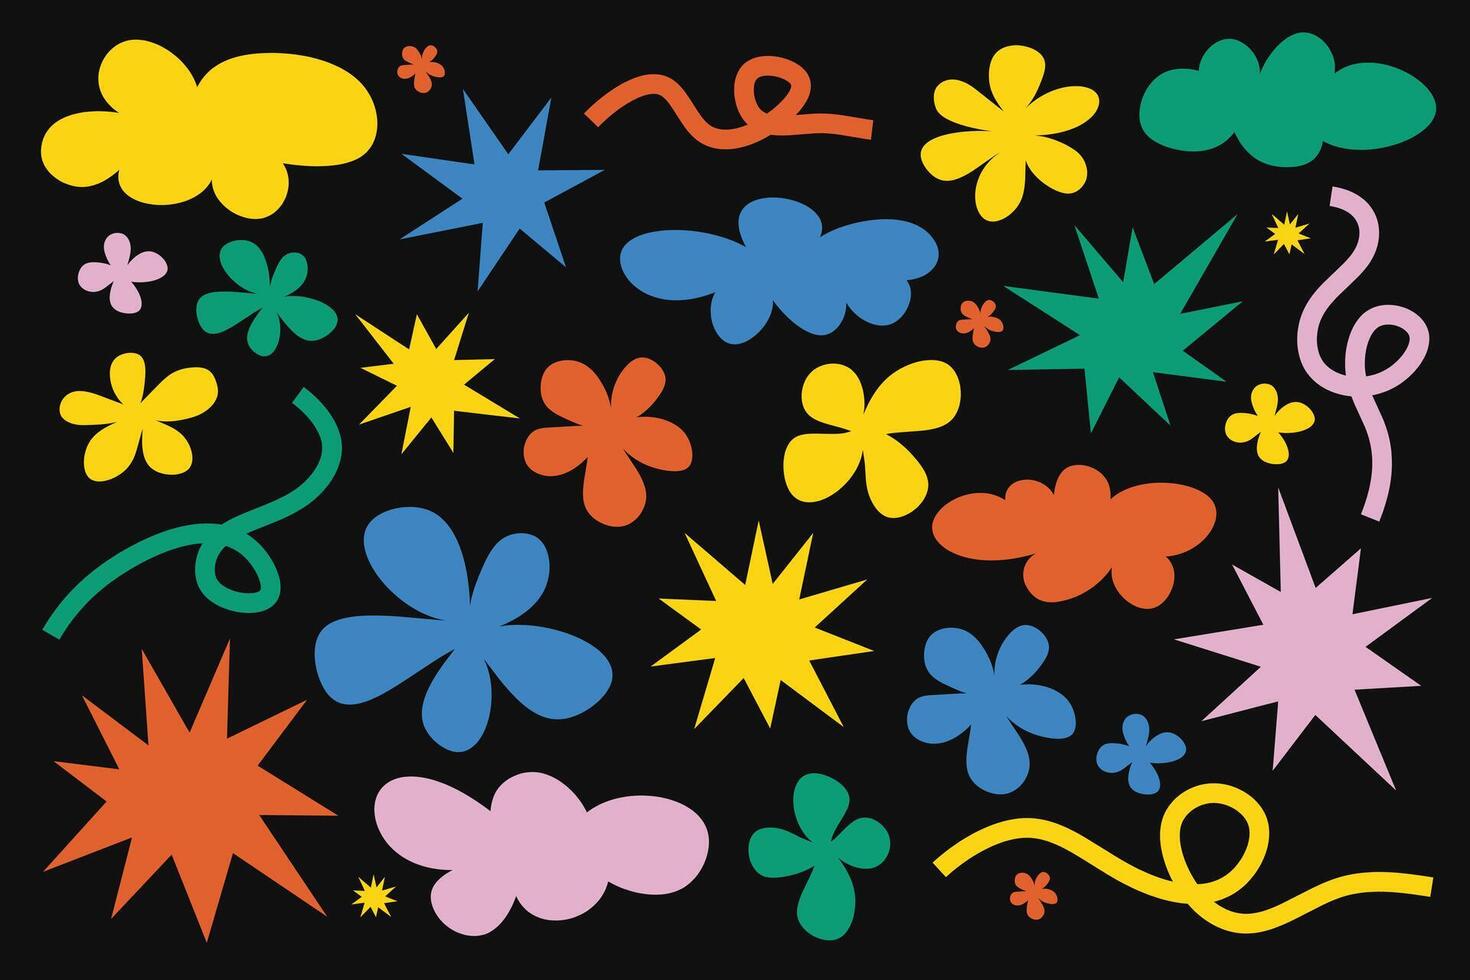 abstrait nuage et fleur formes autocollant paquet. sensationnel froussard fleur, étoile, vagues dans branché rétro Années 90 dessin animé style vecteur